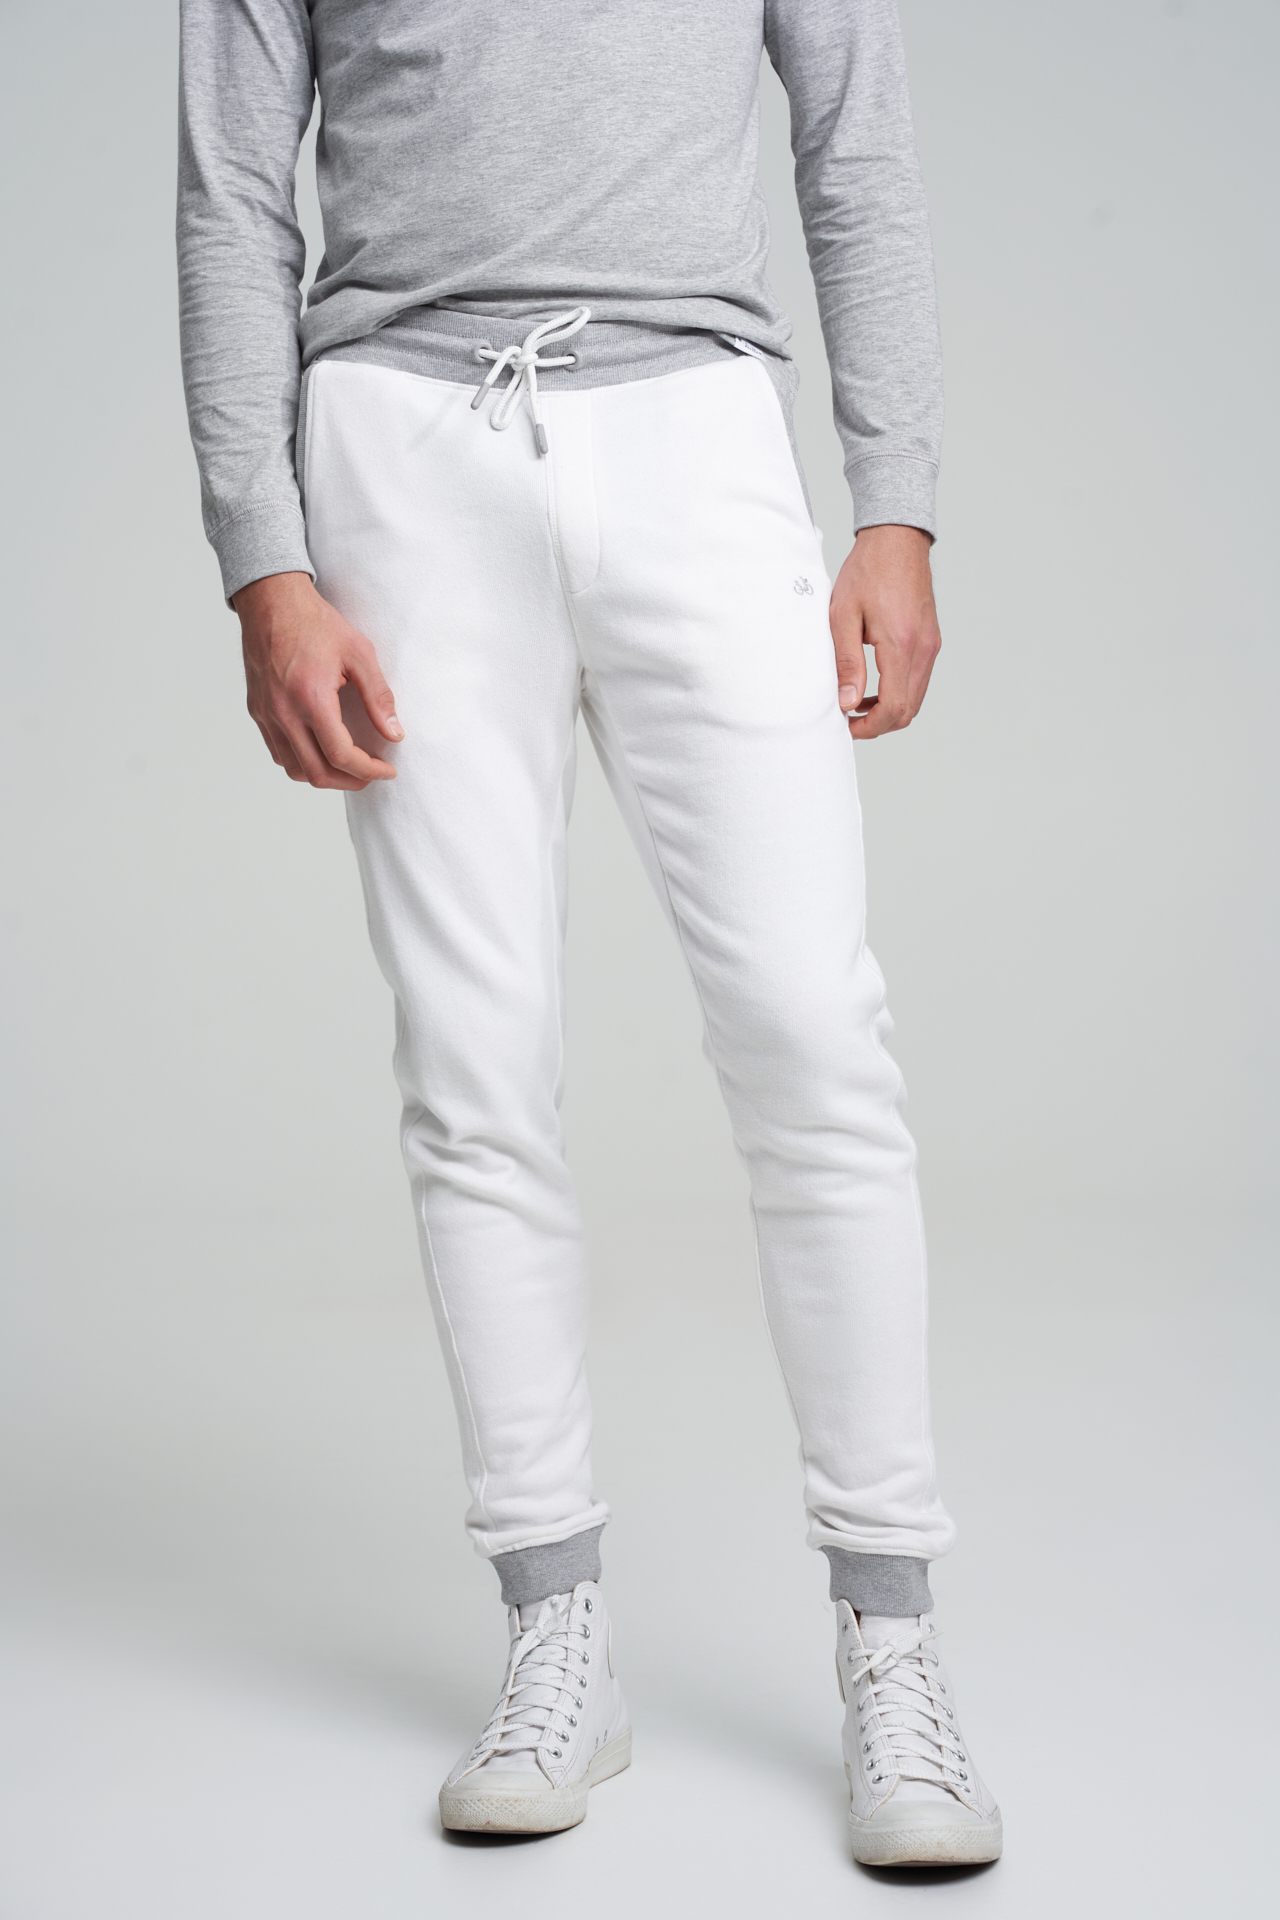 Sportswear Trousers White Sport Man